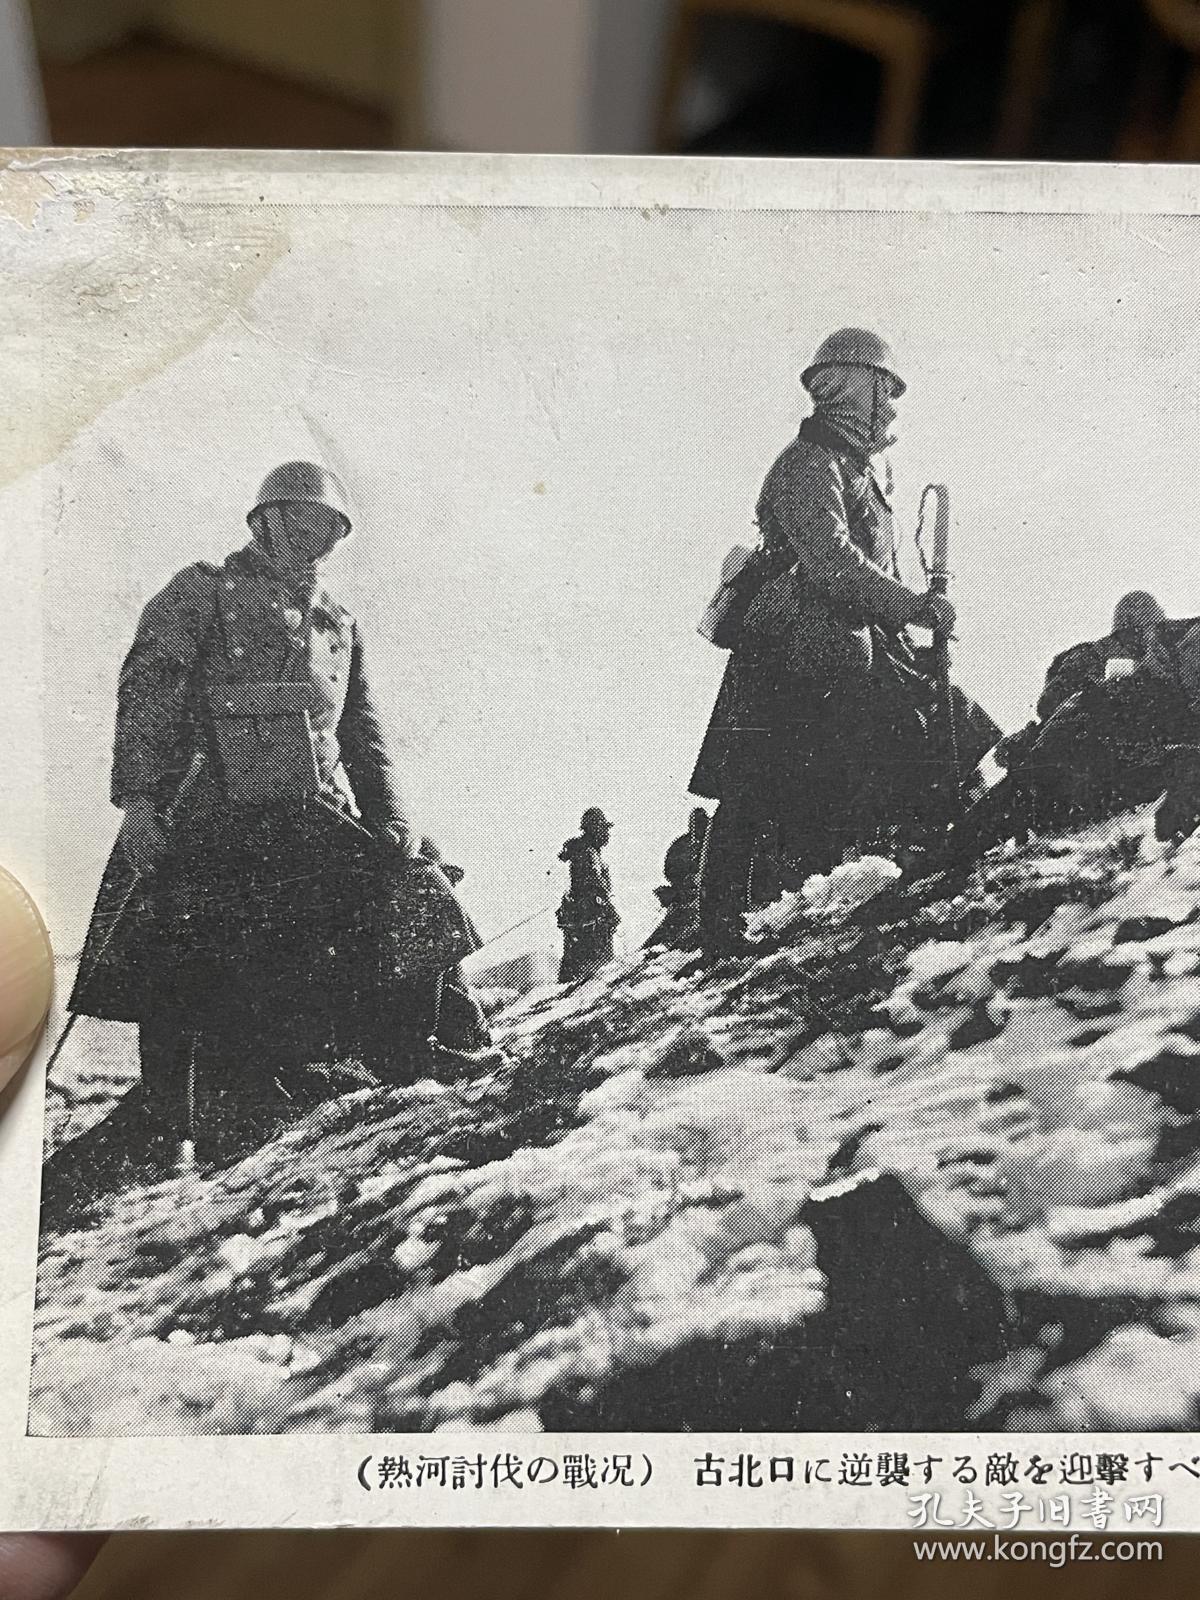 抗日战争时期日军侵略北京古北口一带雪中伏击原版明信片